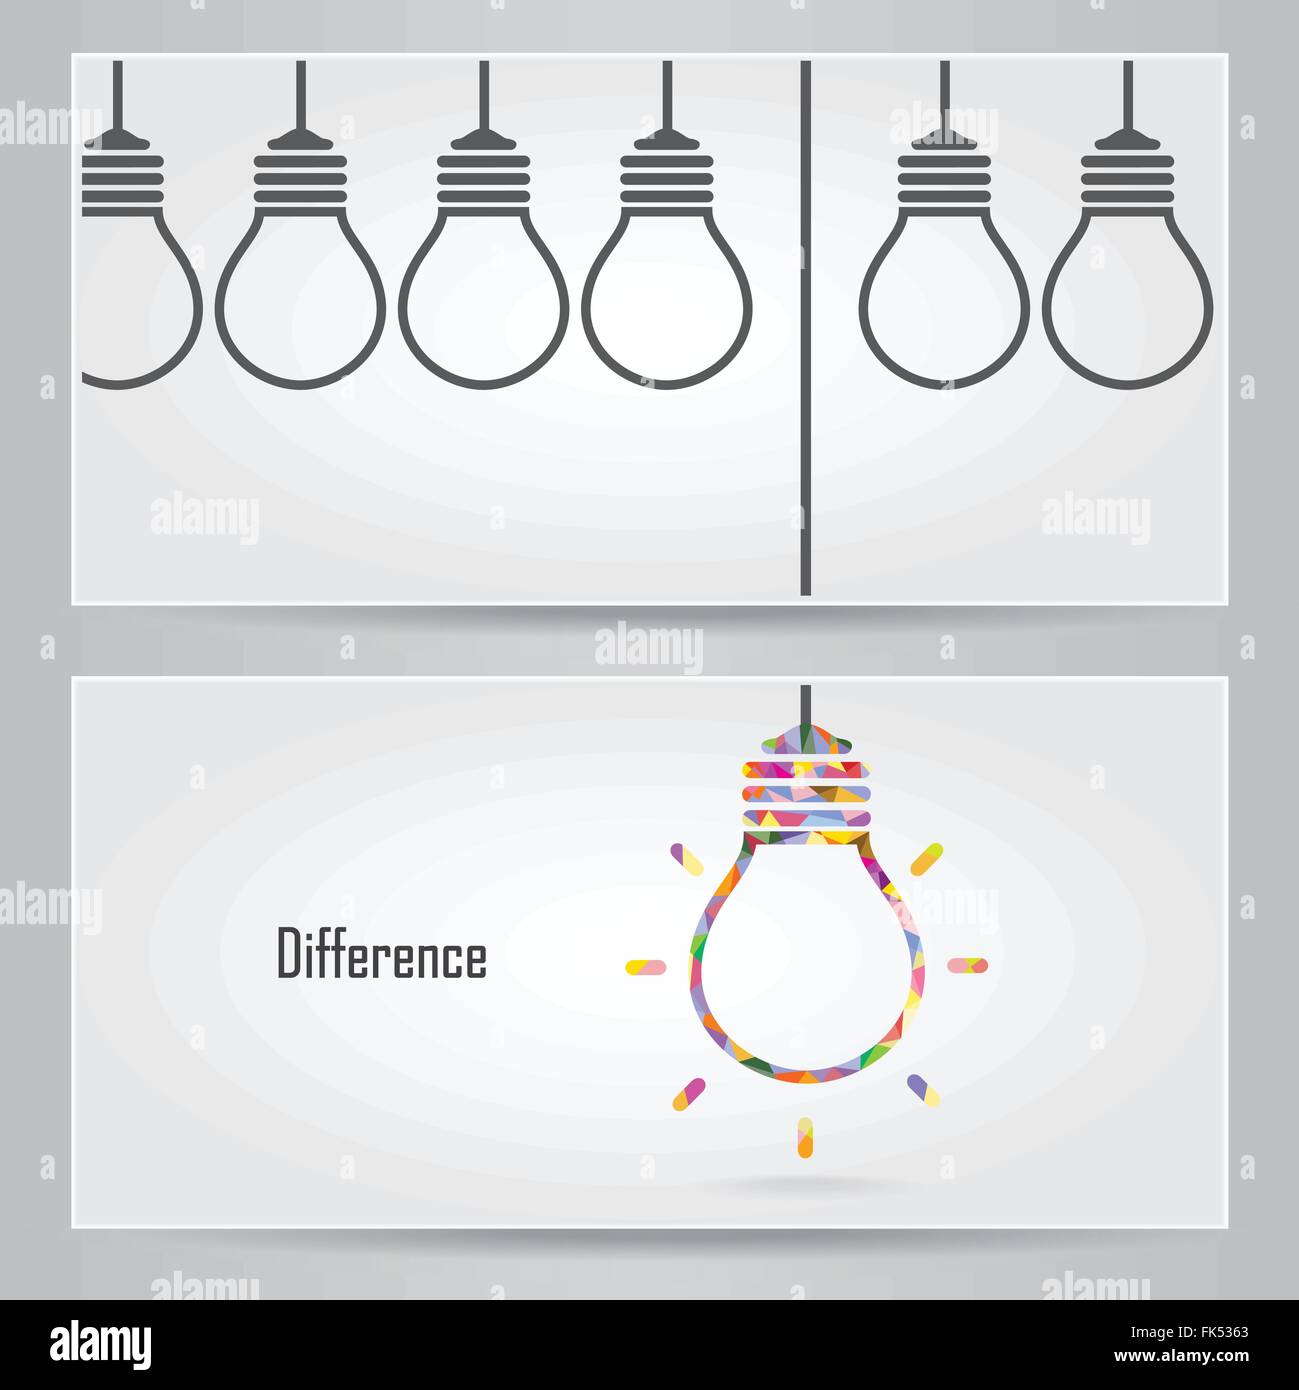 Kreative Glühbirne Idee Konzept Banner Hintergrund. Verschiedene Banner-Konzept. Vektor-illustration Stock Vektor